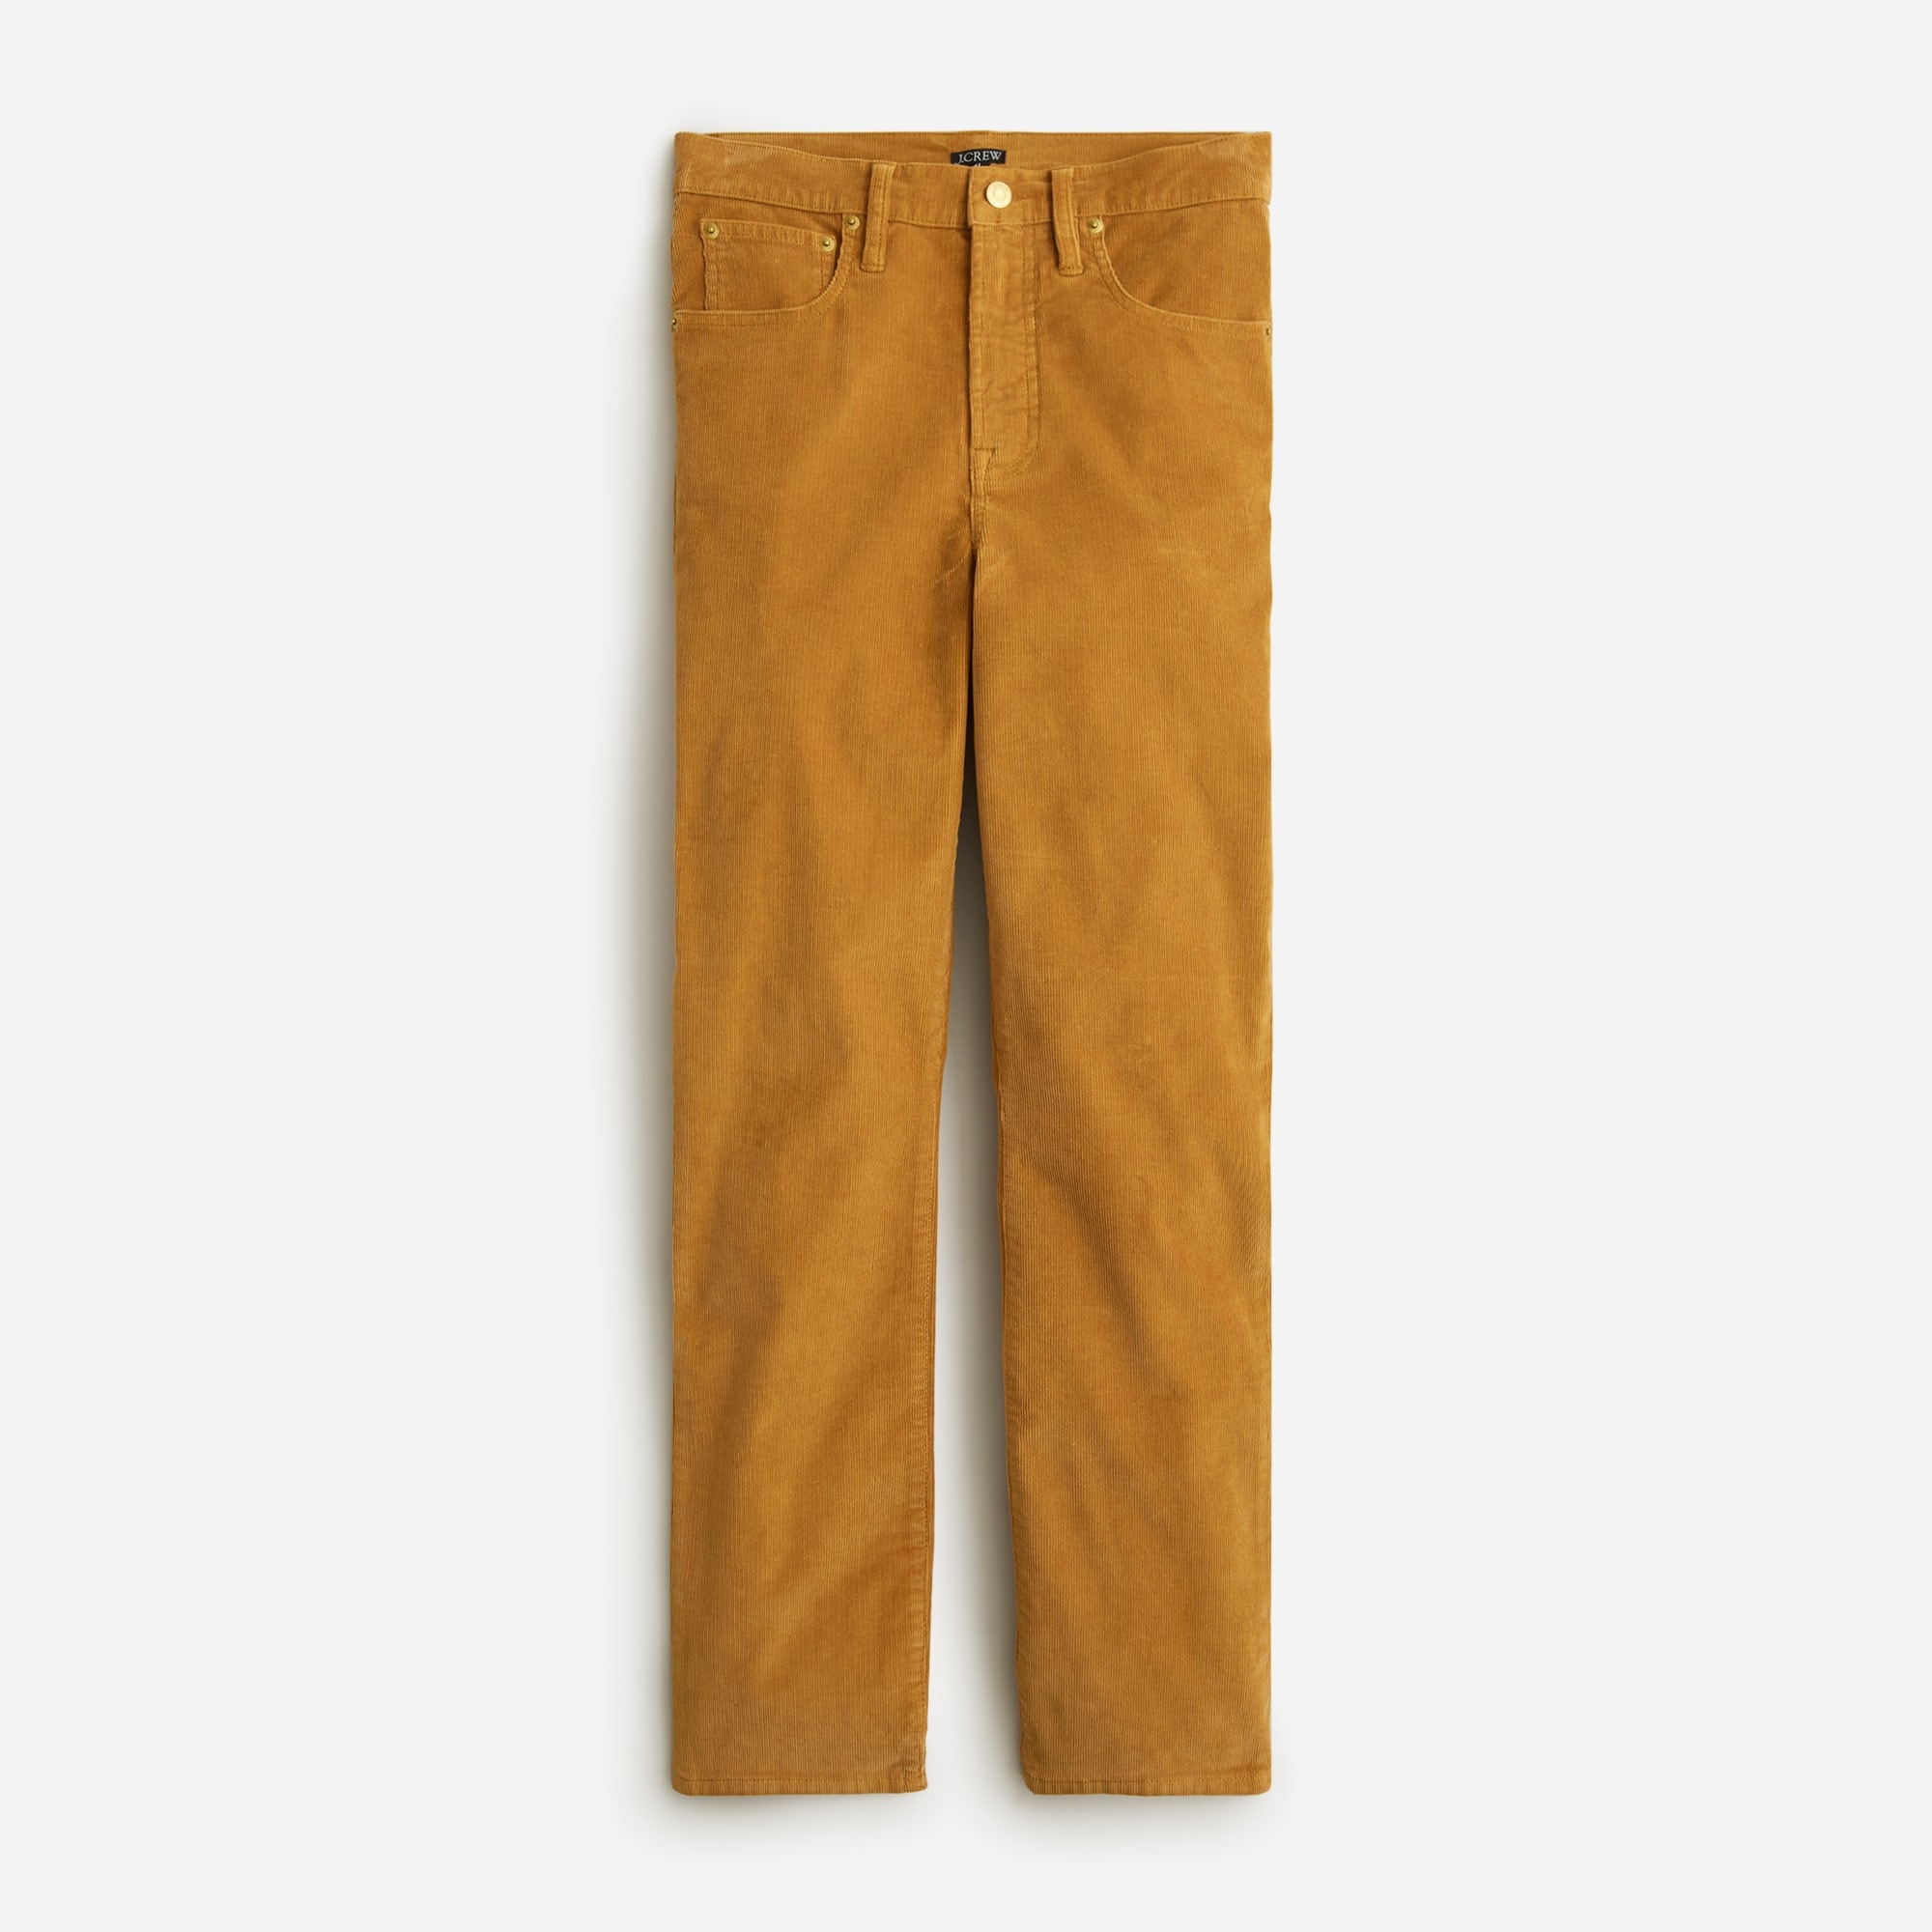  Tall vintage slim-straight corduroy pant